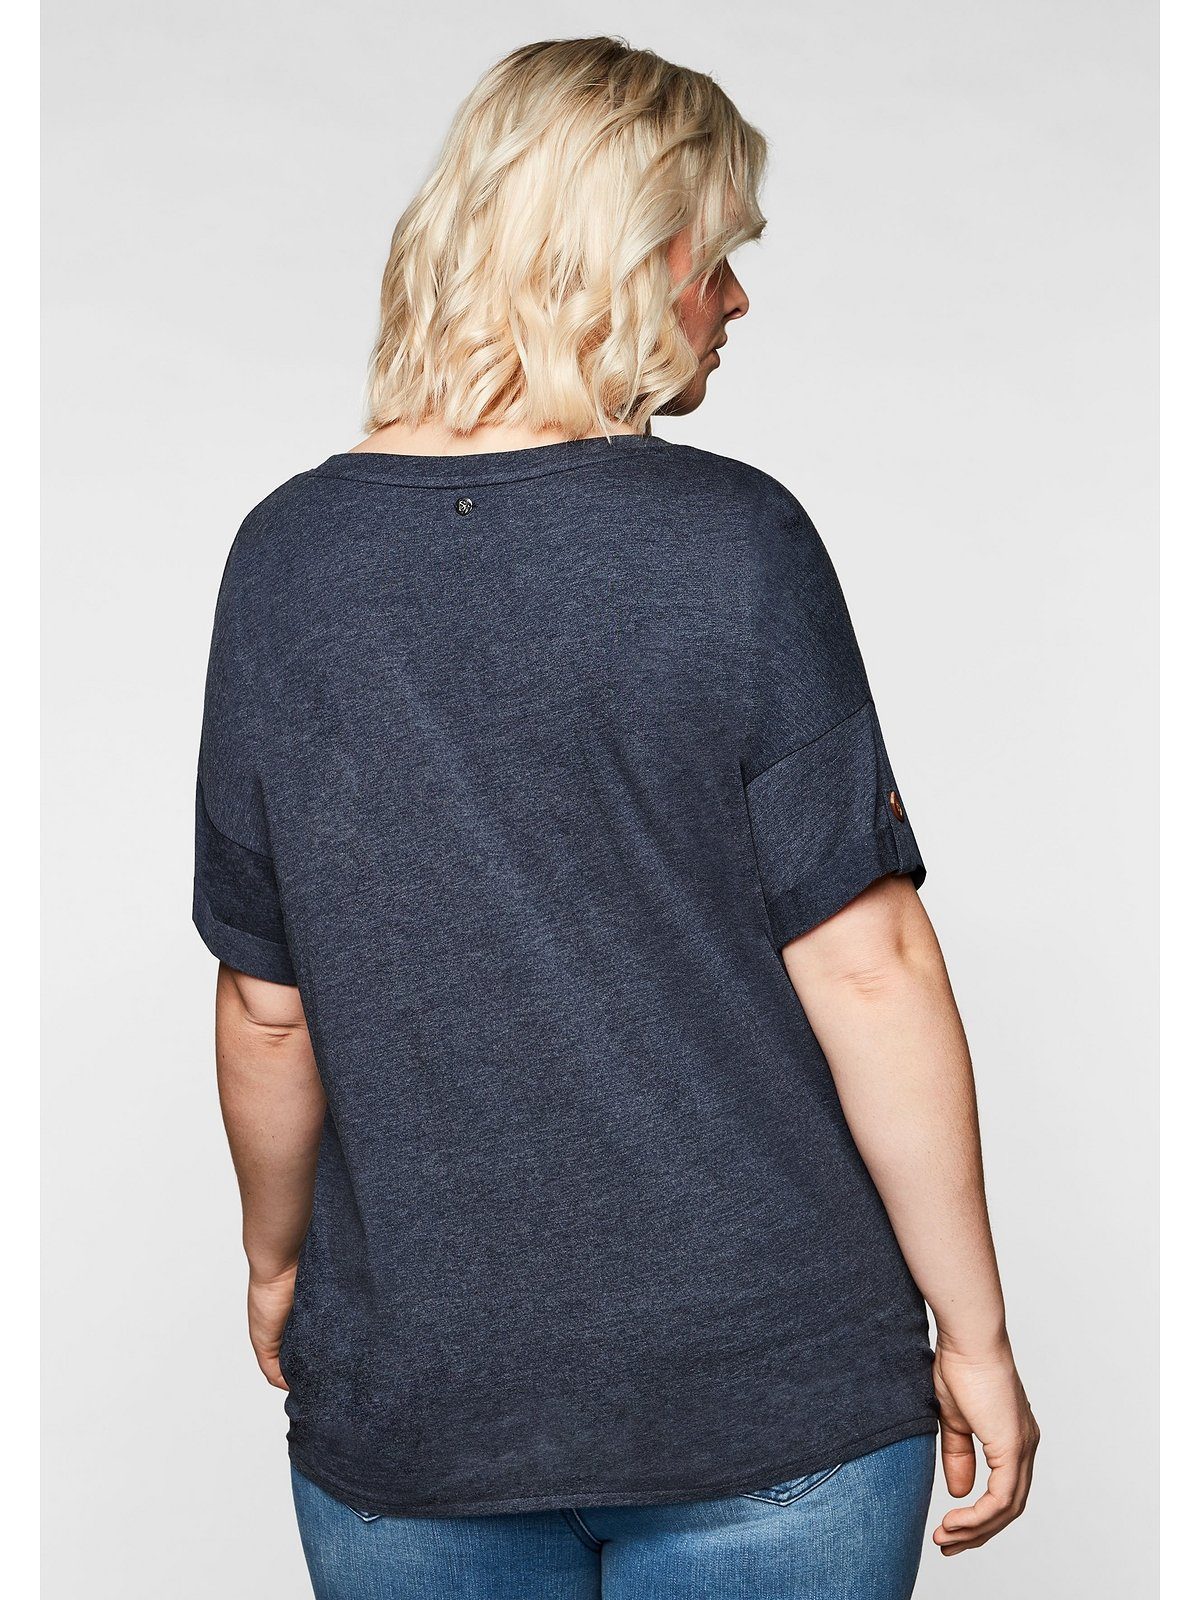 Sheego T-Shirt Große Größen Saum Knotendetail am mit und Ziernaht